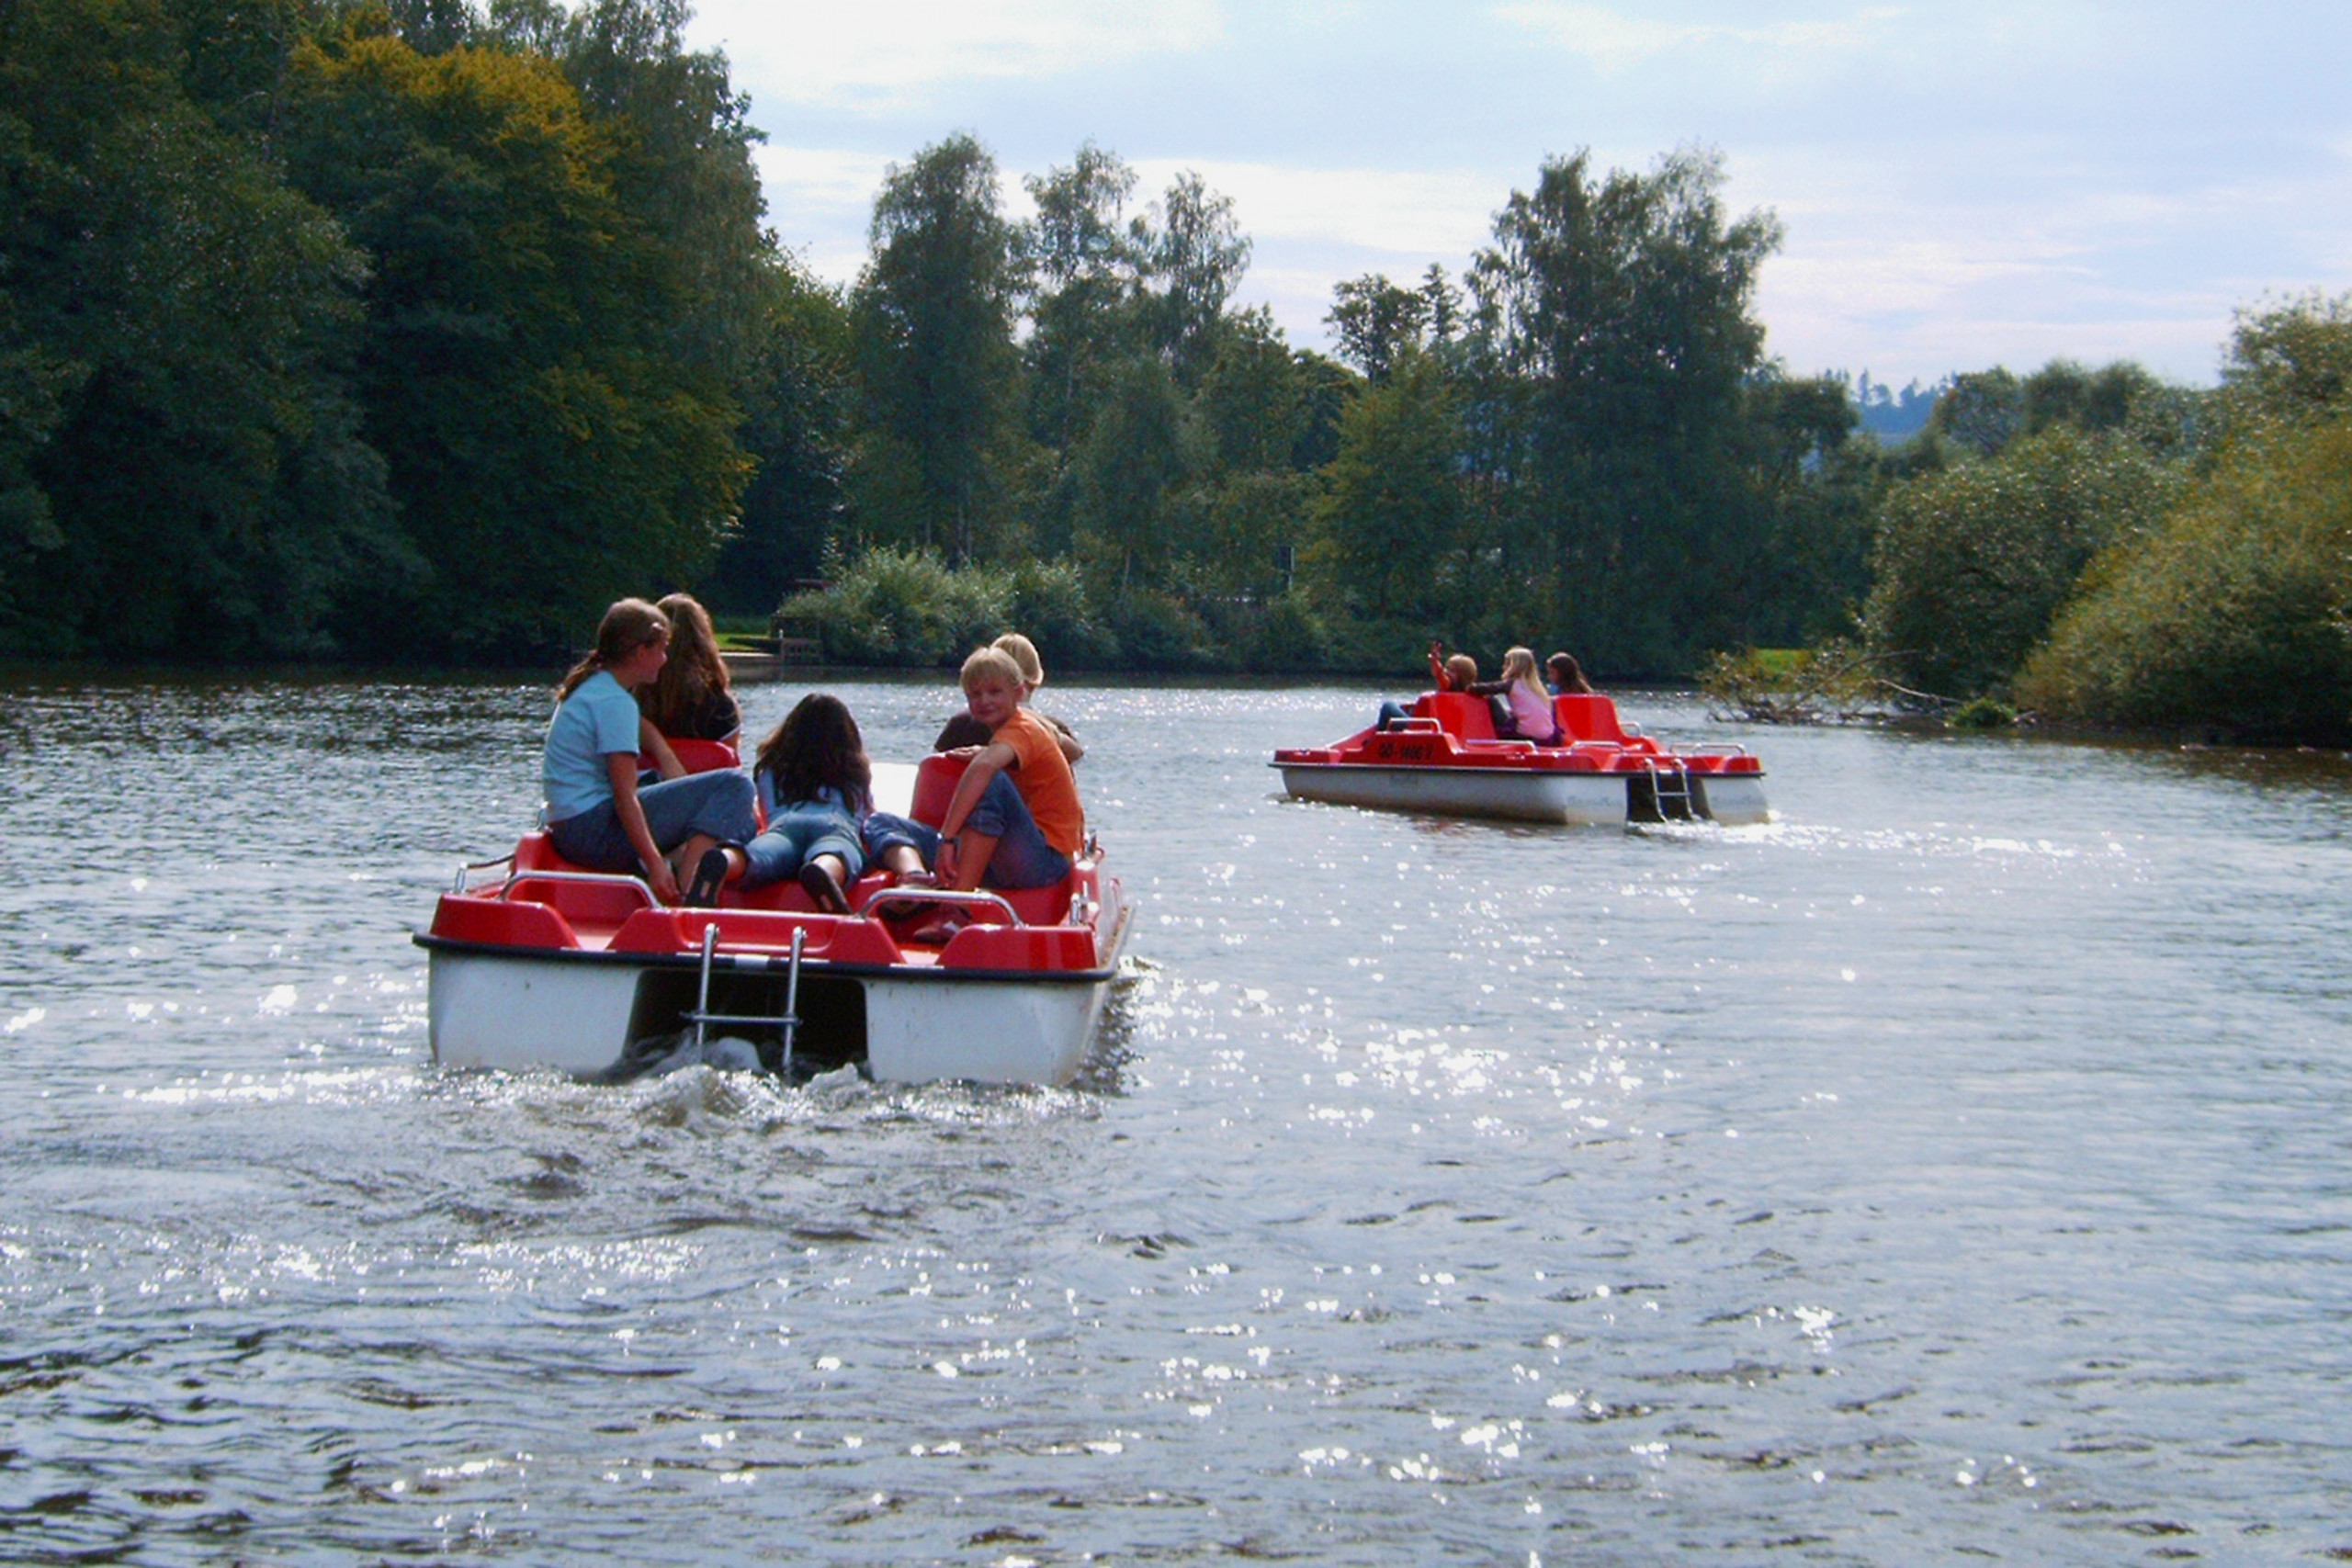 Tretbootfahren bei der Jugendfahrt in Melsungen, 2006. Neben gemeinsamen Proben gehören auch Freizeitaktivitäten dazu.